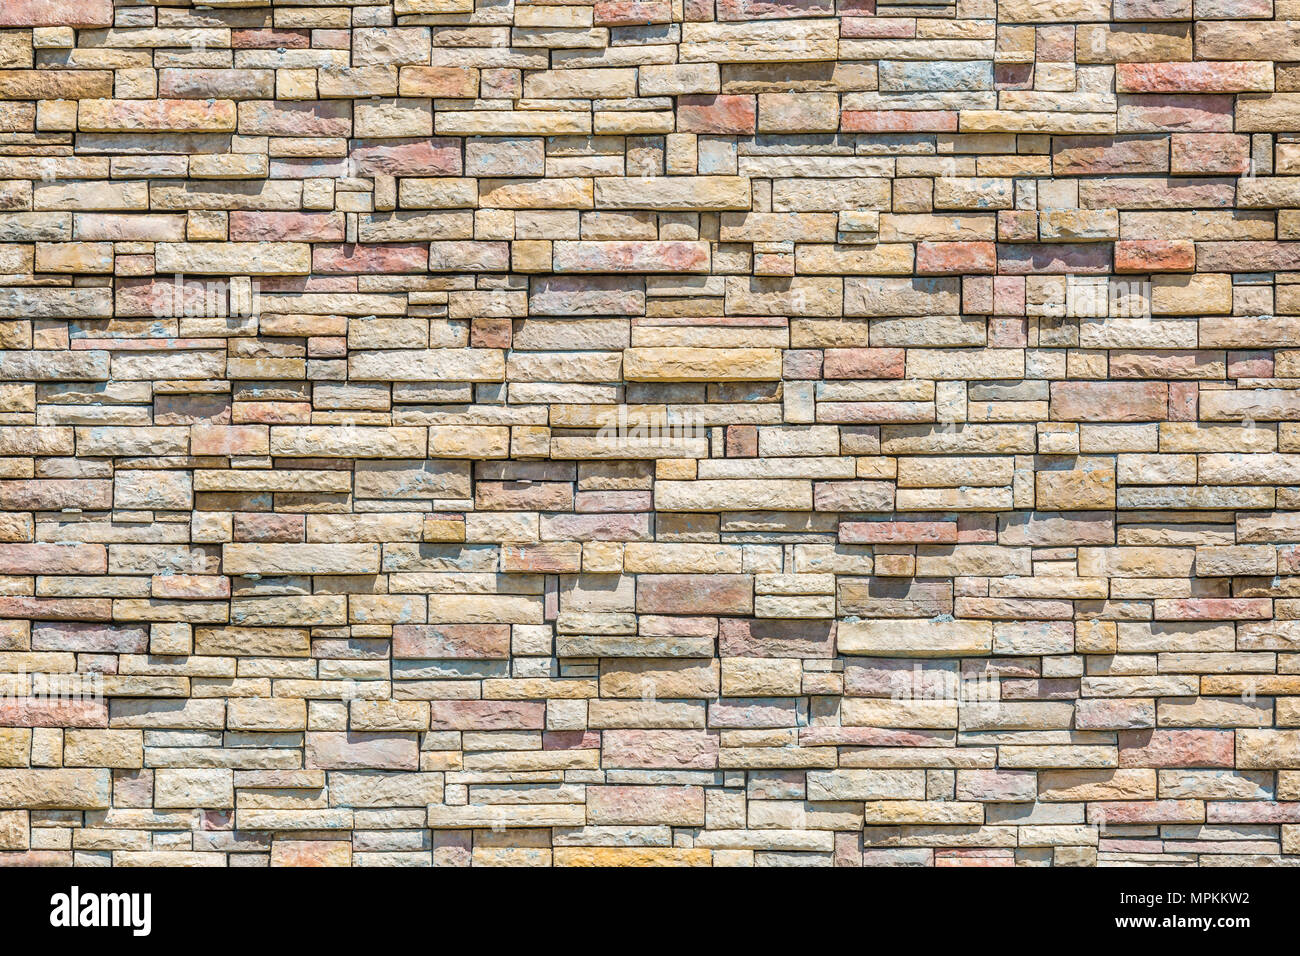 Stacked stone masonry wall Stock Photo